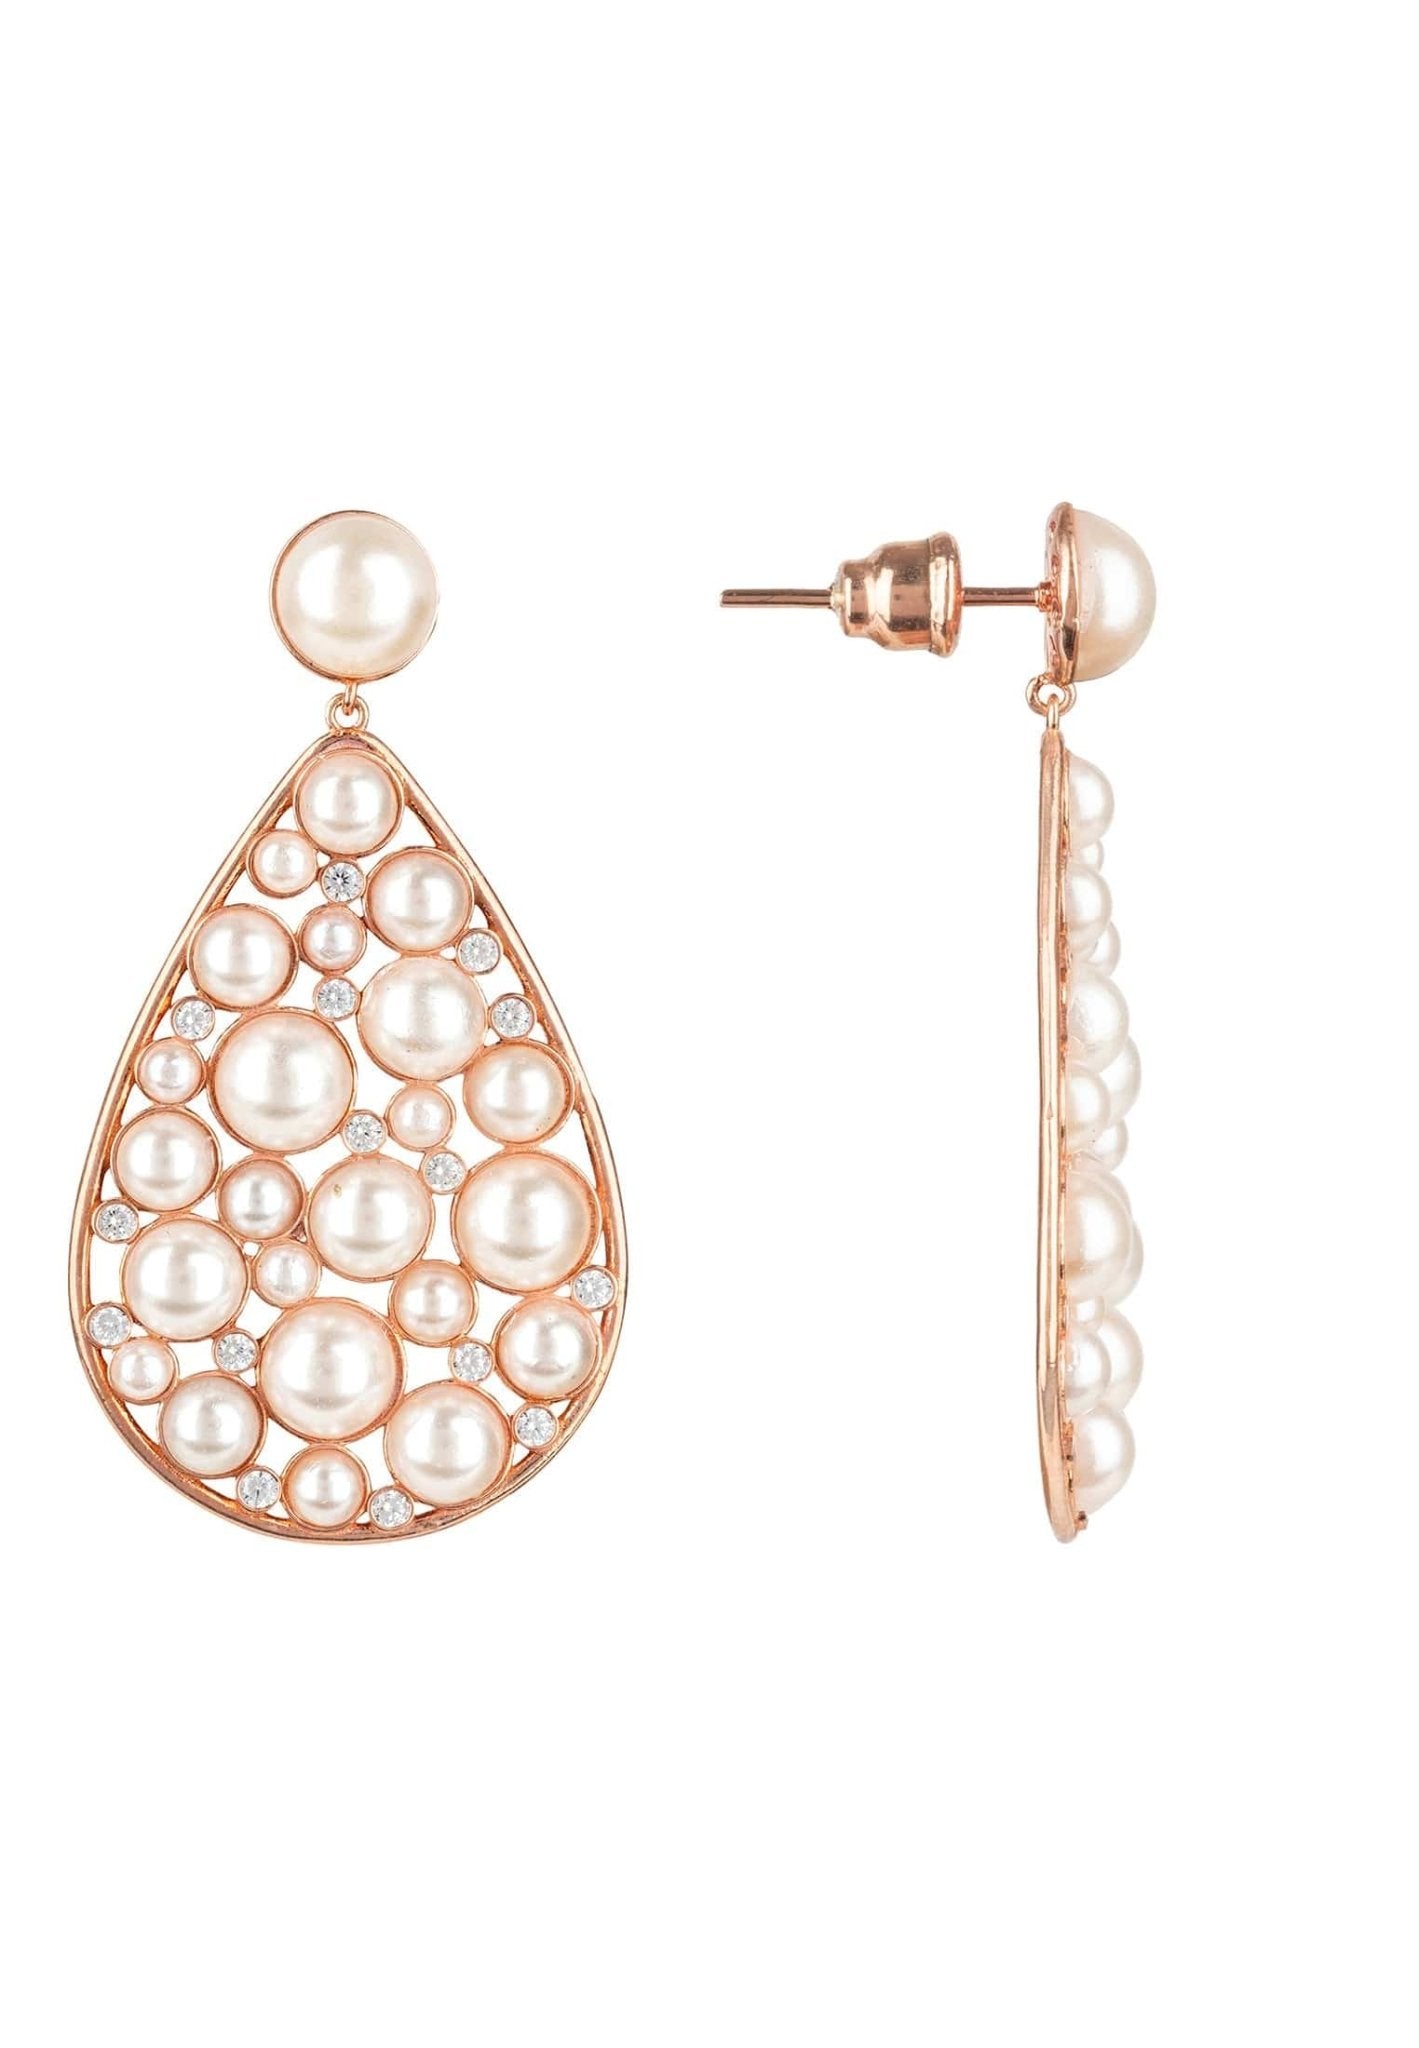 Pearl Elizabeth Statement Teardrop Earrings Rosegold - LATELITA Earrings